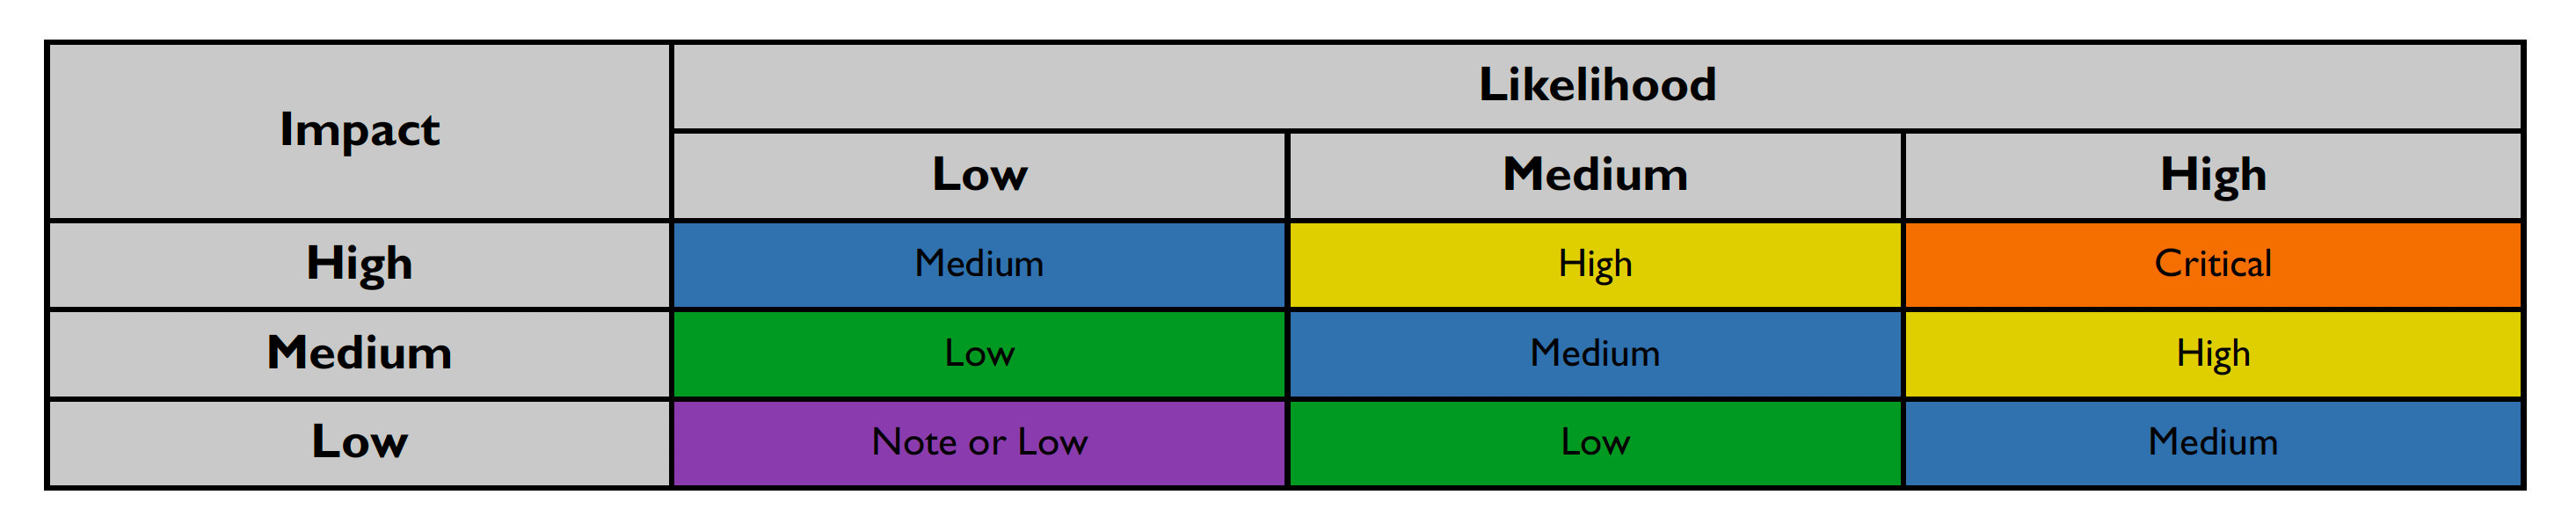 likelihood level table